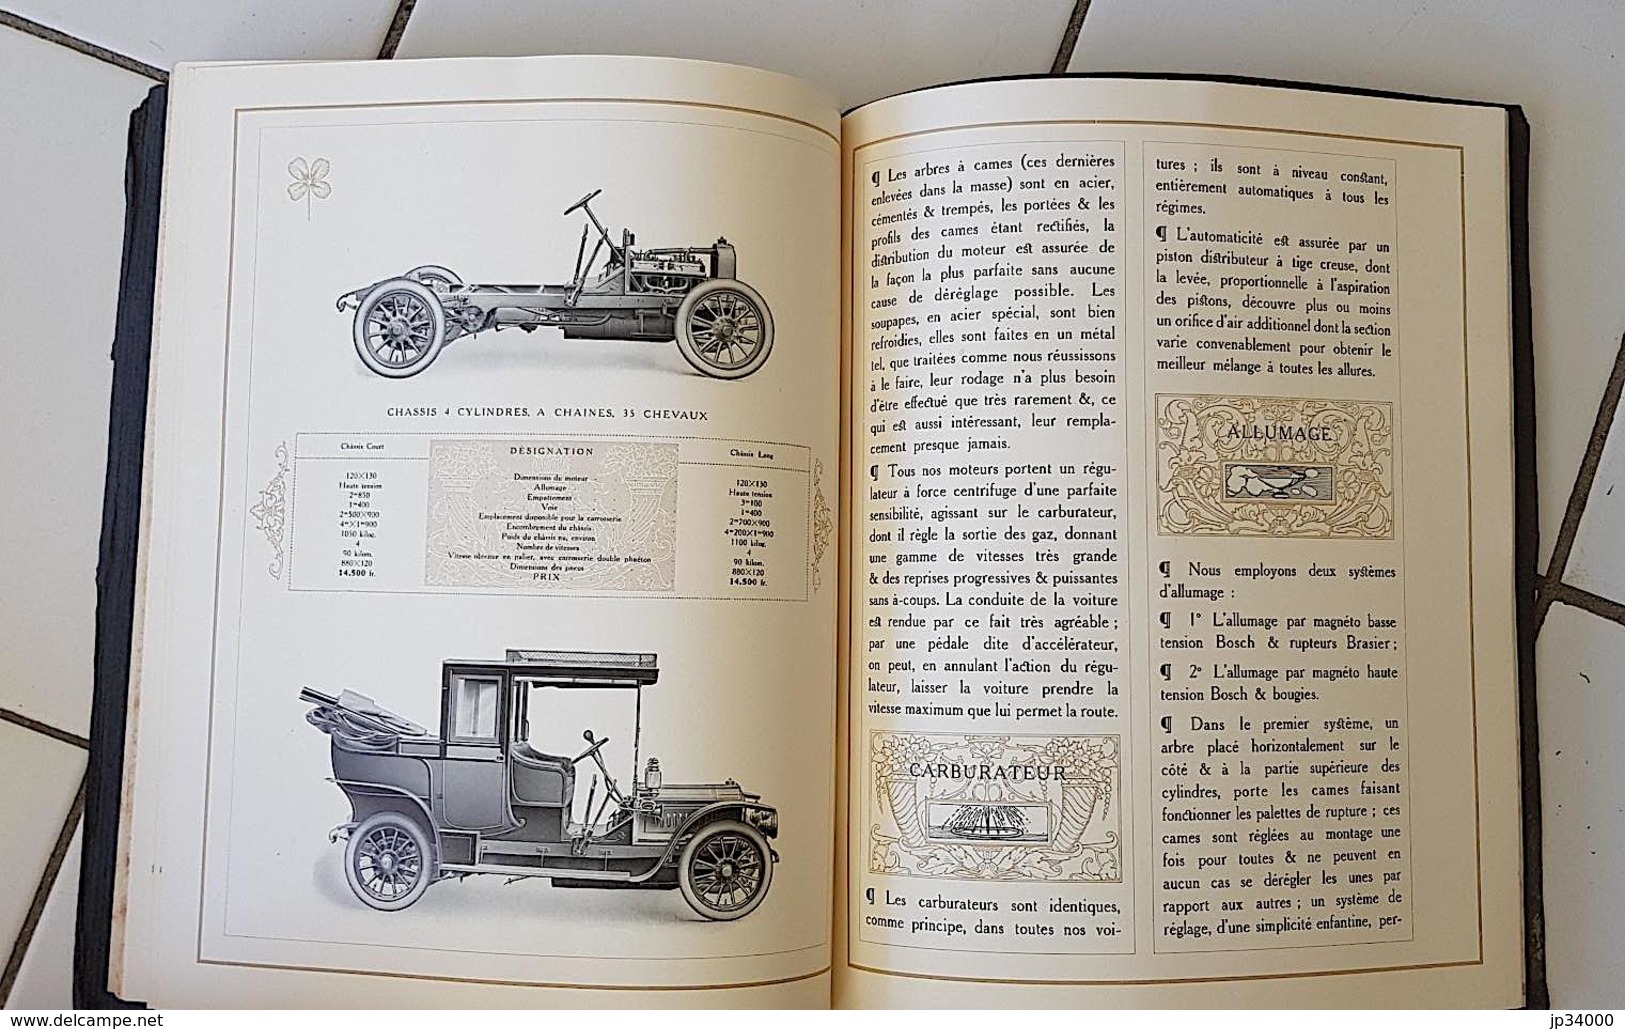 CATALOGUE BRASIER "Il était une fois une Automobile", texte Henry Kistemaeckers.